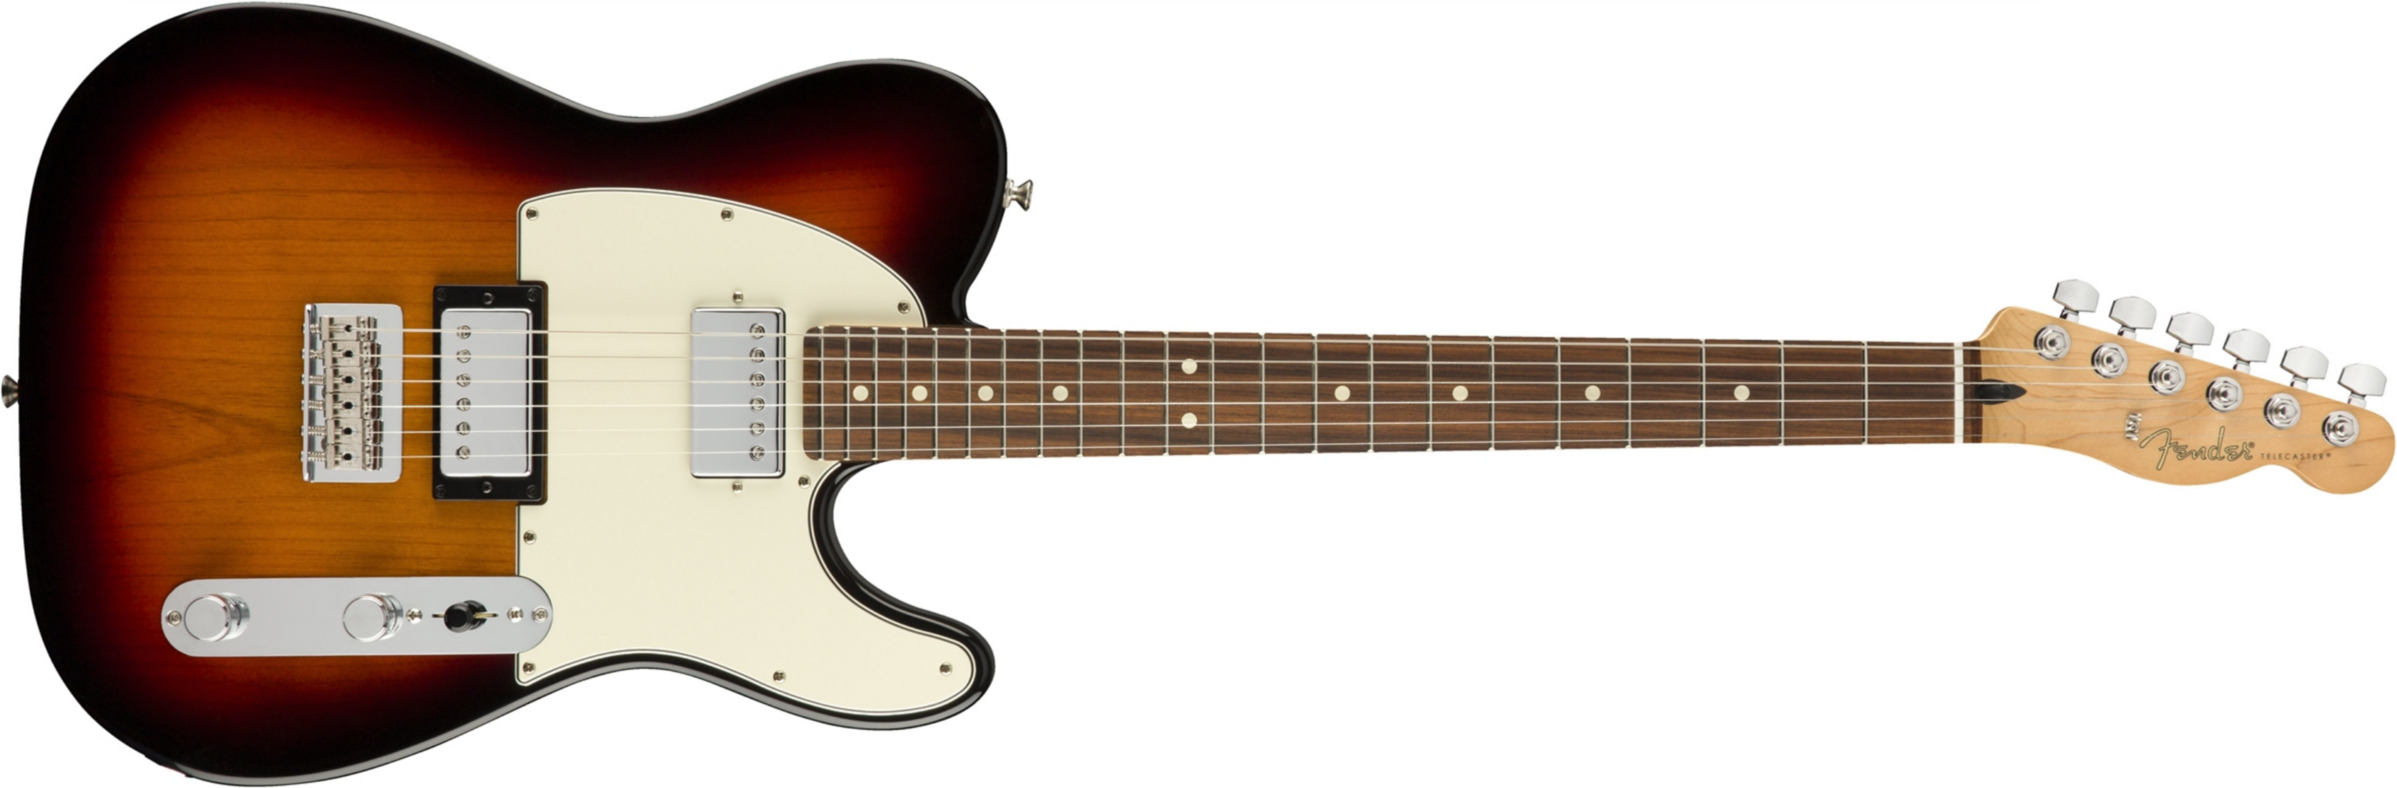 Fender Tele Player Mex Hh Pf - 3-color Sunburst - Guitarra eléctrica con forma de tel - Main picture